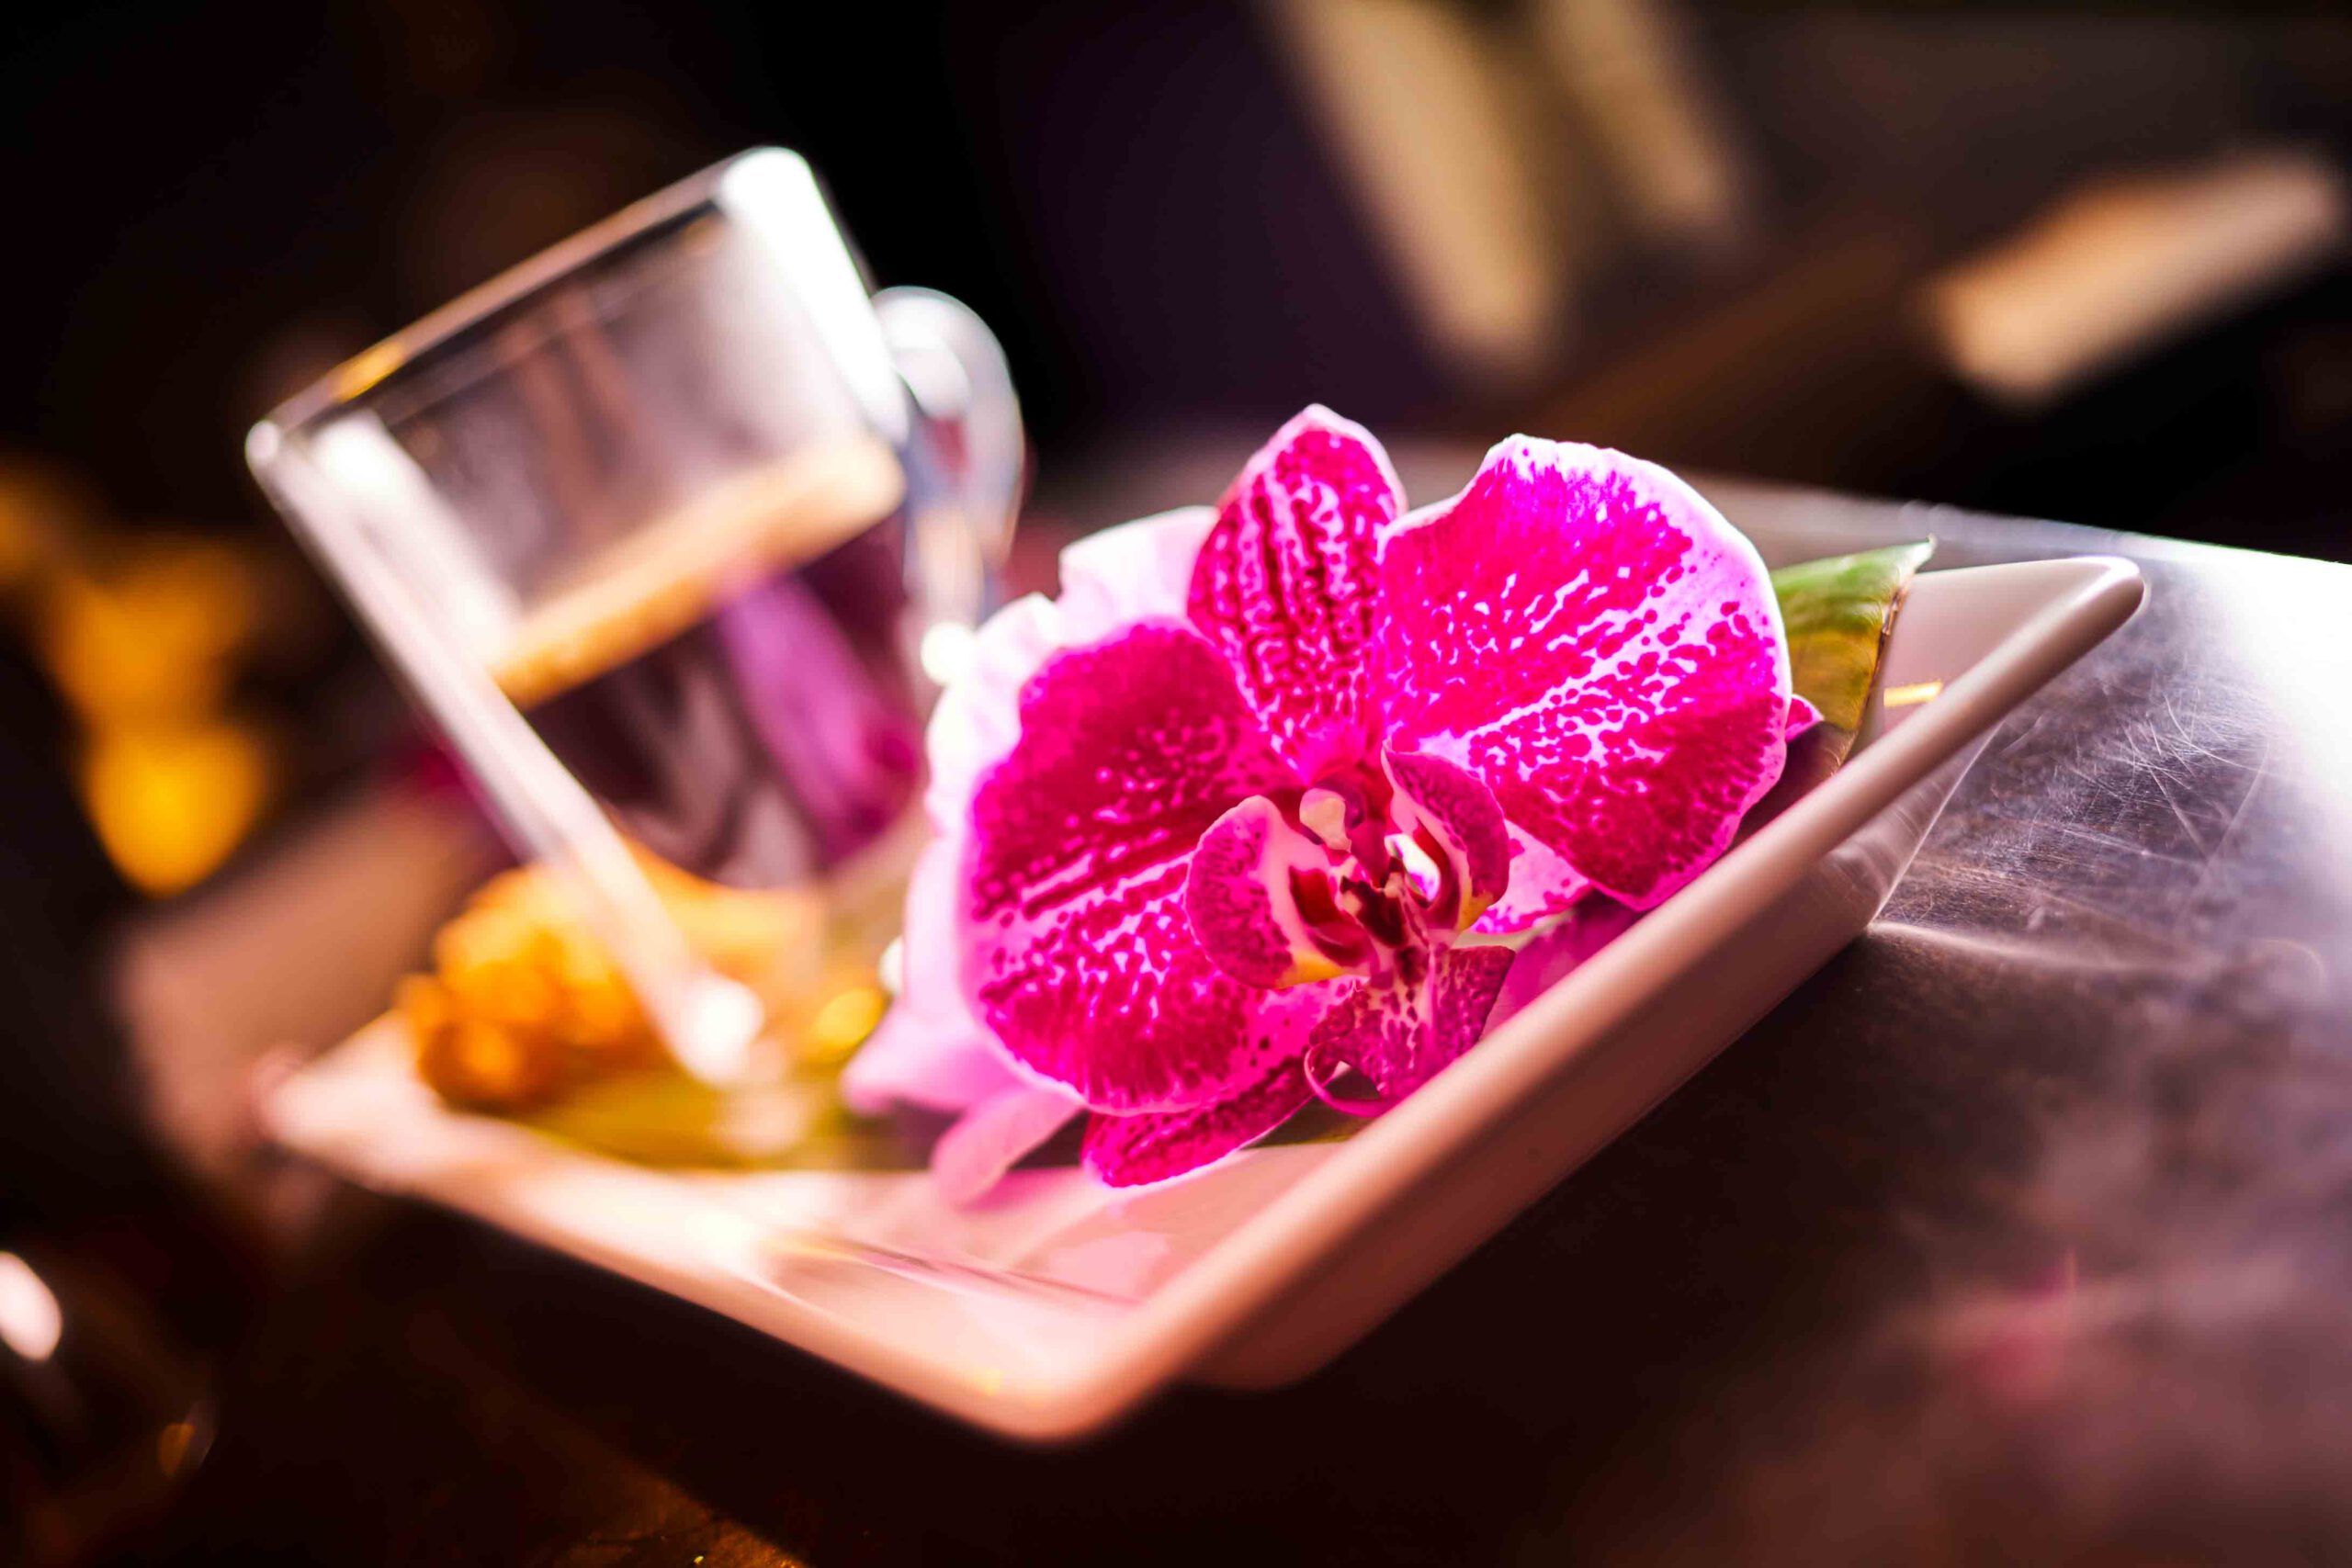 Orchidee auf kleinem Teller im Restaurant als Nahaufnahme. Im Hintergrund ist eine Espressotasse zu erkennen